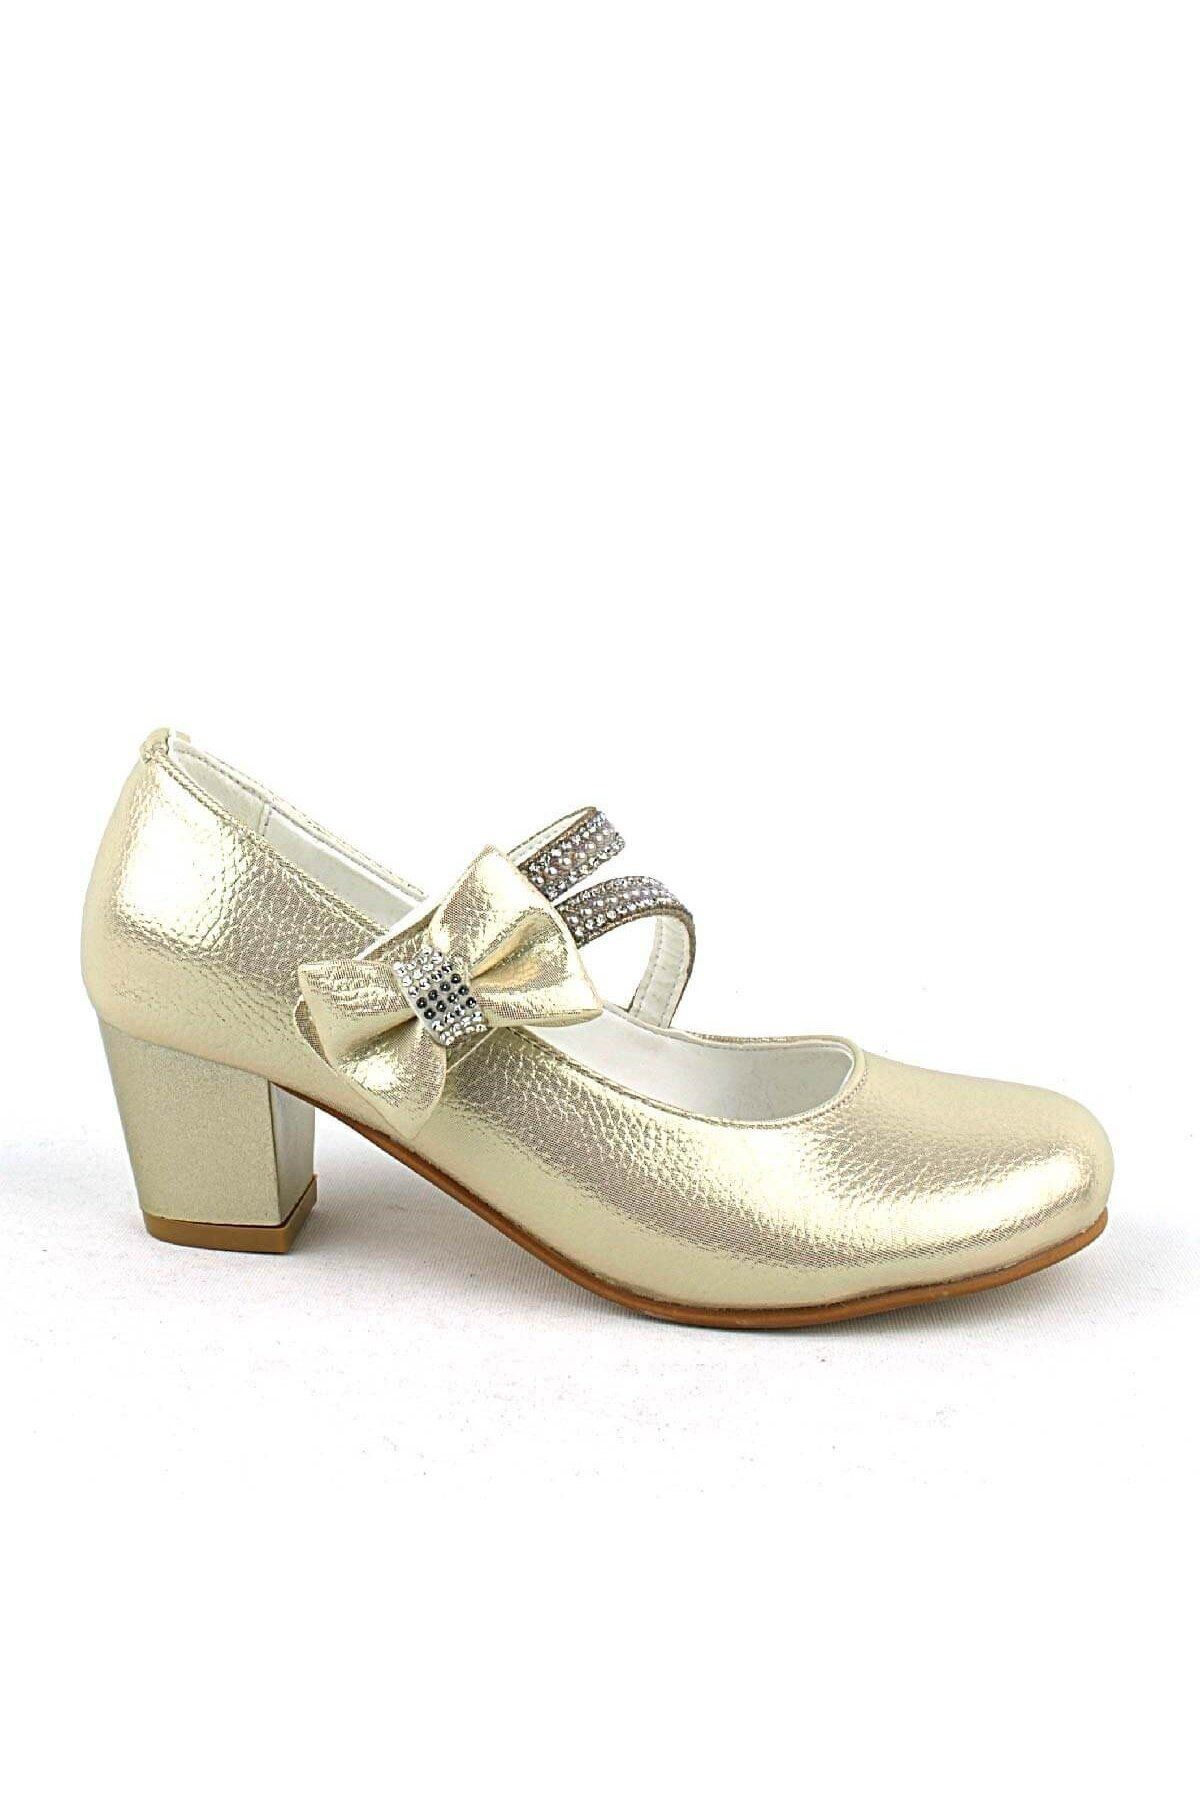 hapshoe Altın Kurdeleli Taşlı Kız Çocuk Topuklu Abiye Ayakkabı